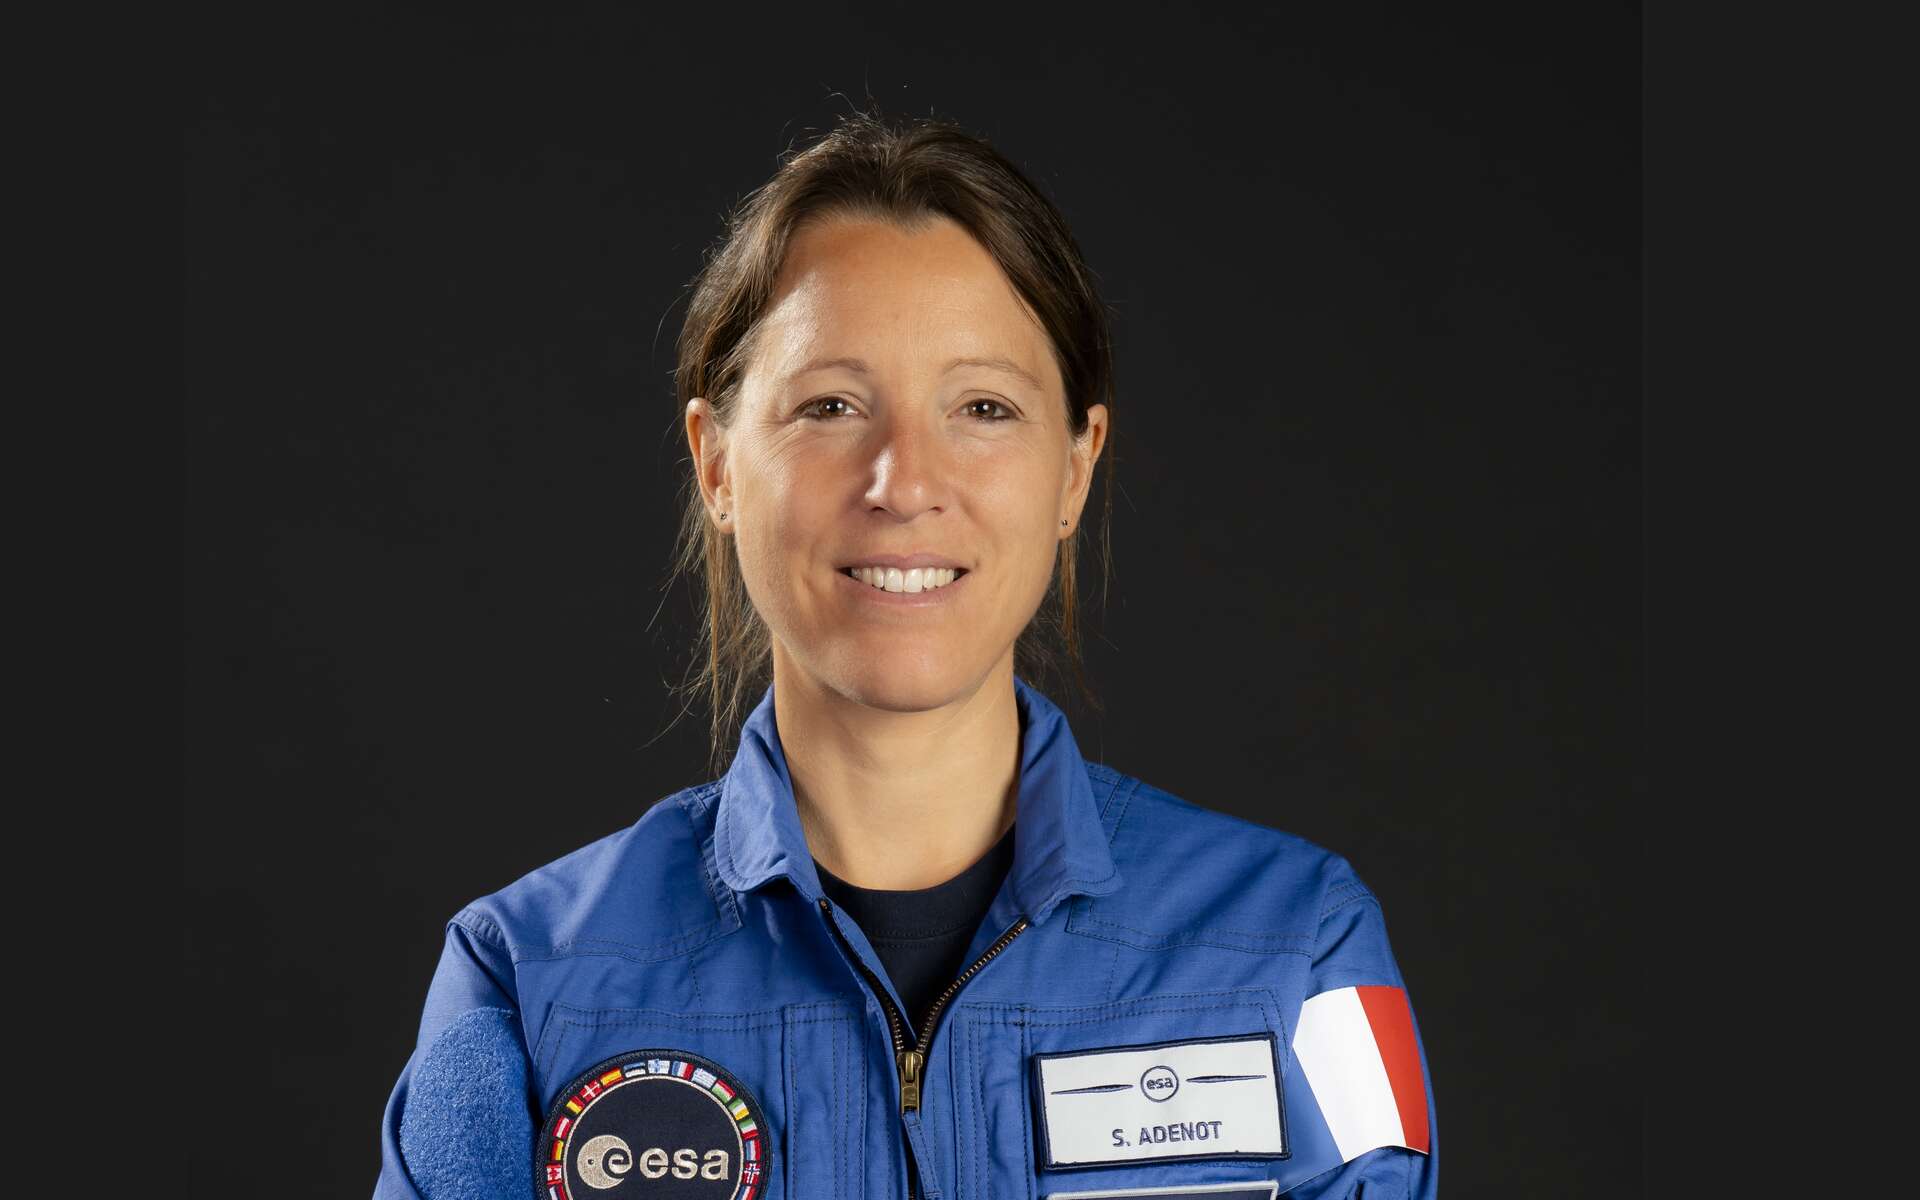 On connait la première mission dans l'espace de Sophie Adenot